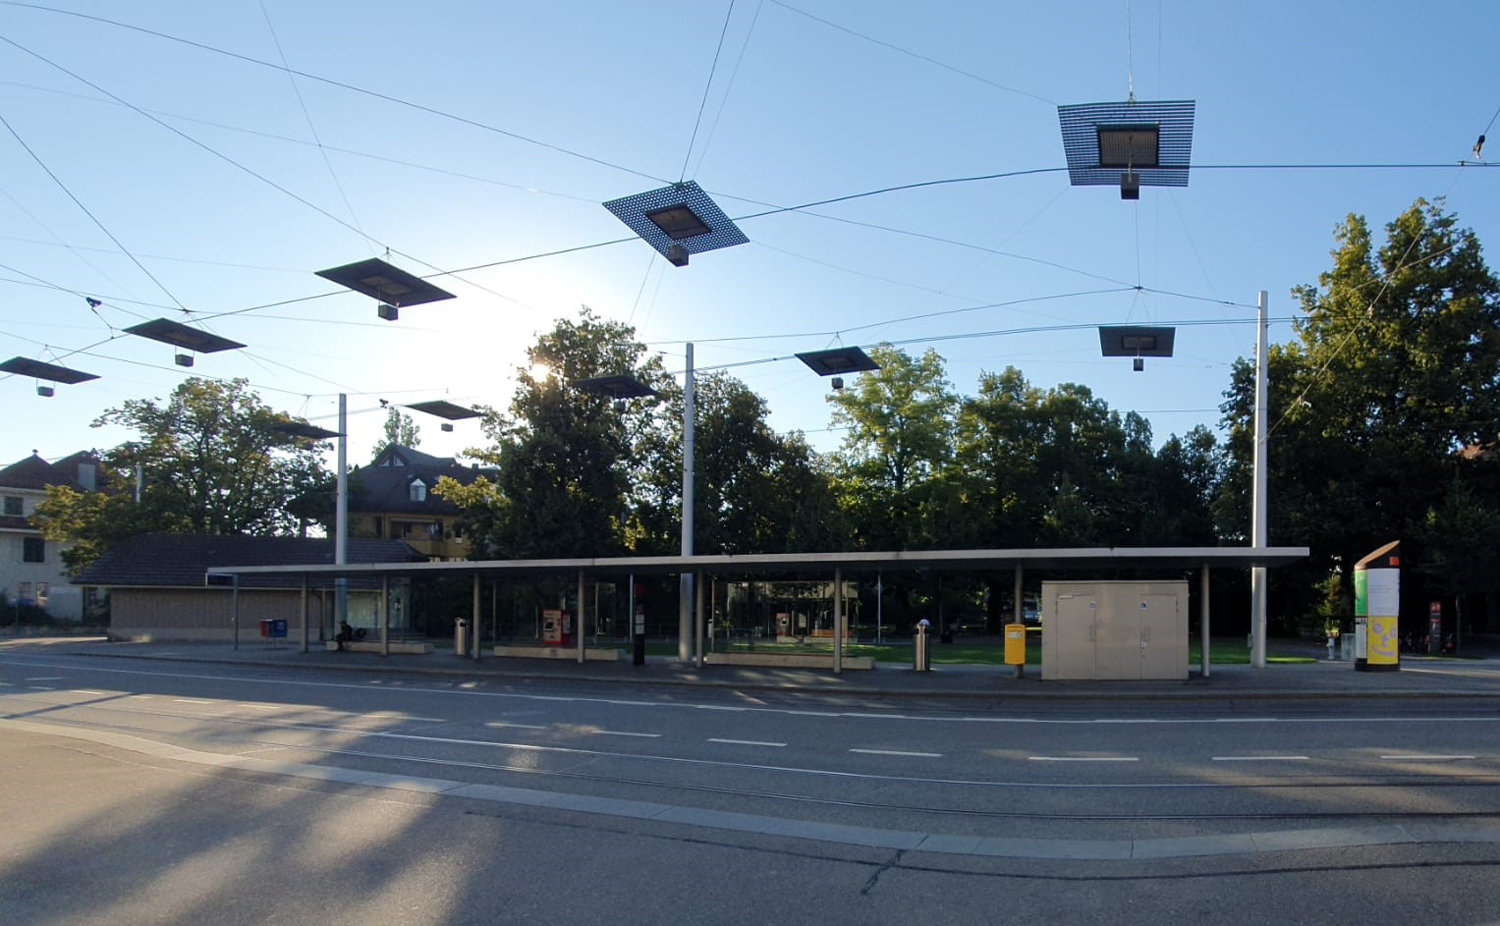 Bild von der Bushaltestelle im Bachmaetteli in Bern Buempliz